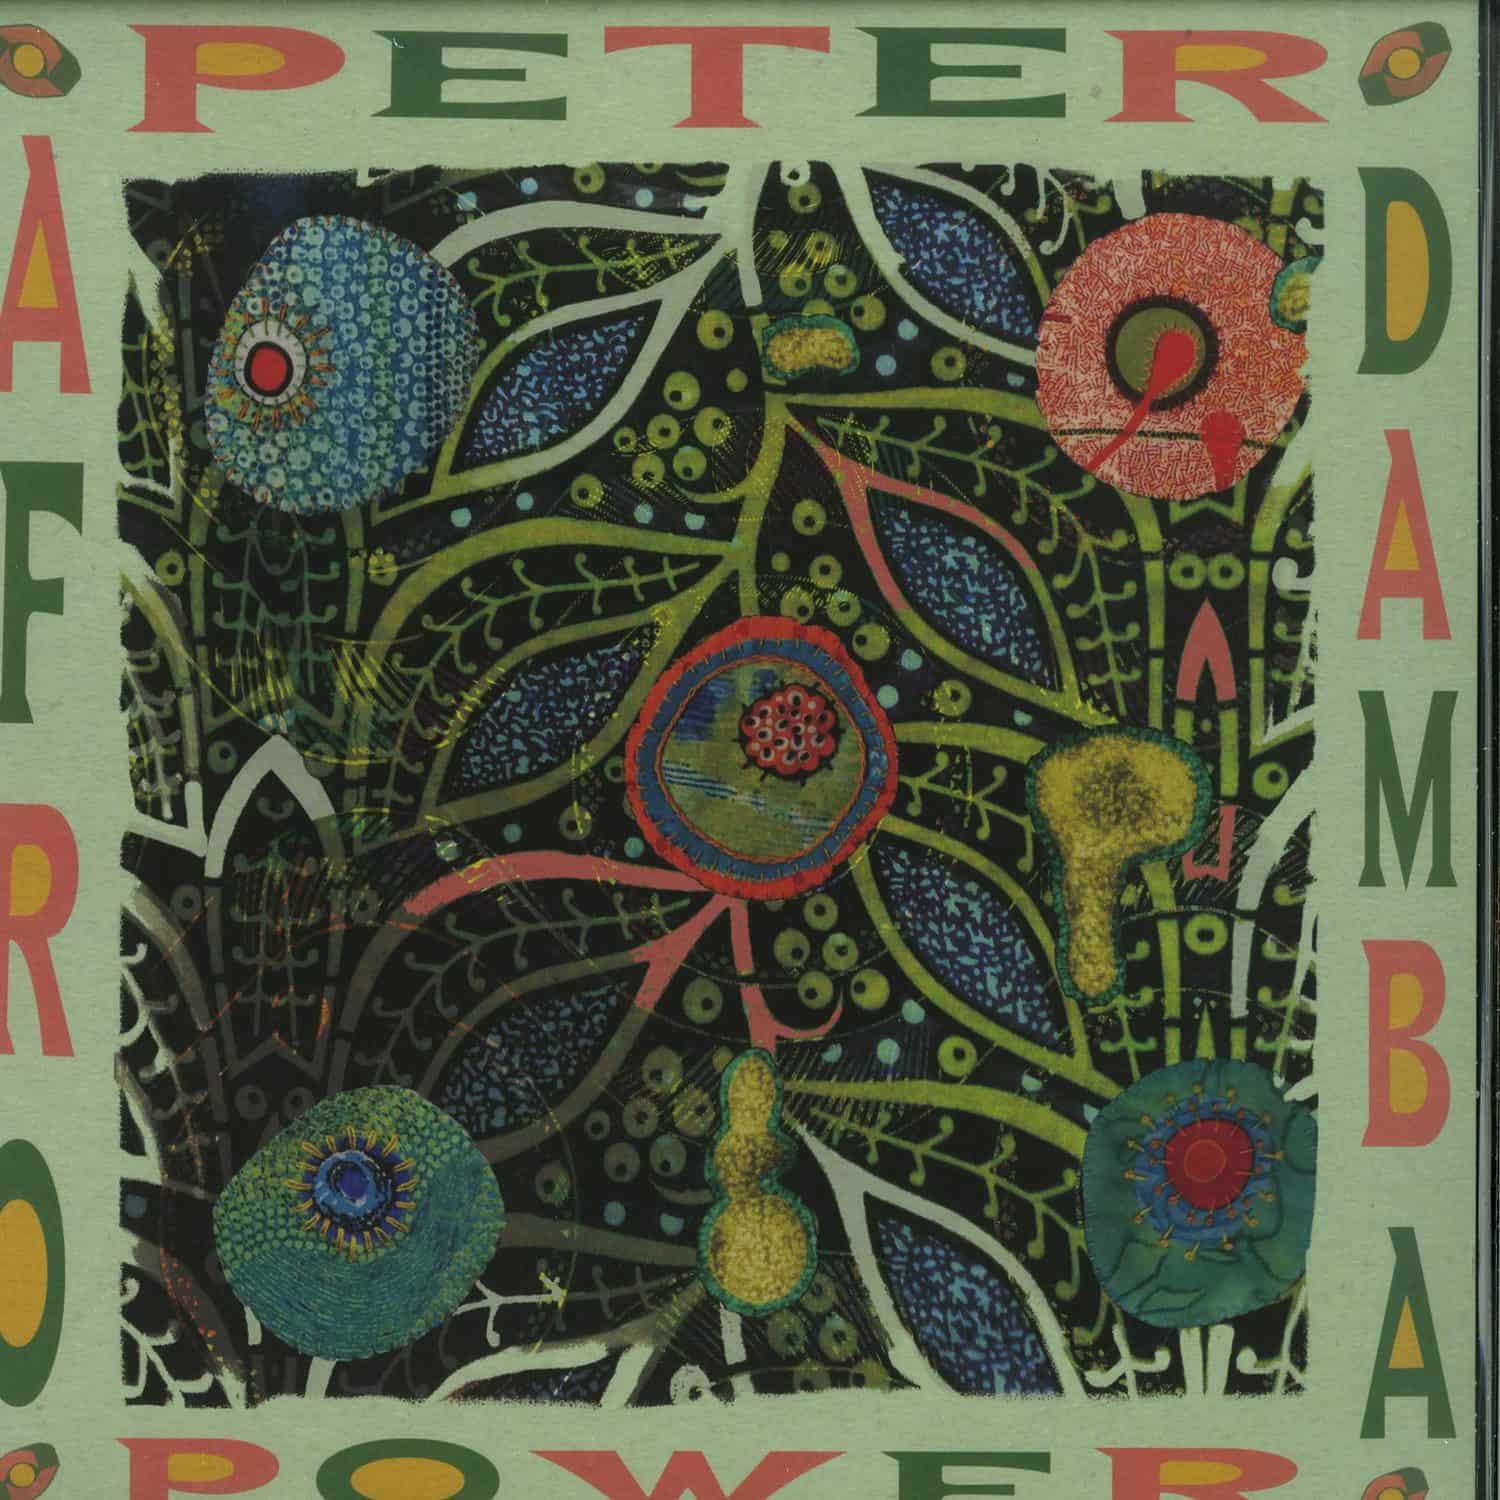 Peter Power - AFRO DAMBA